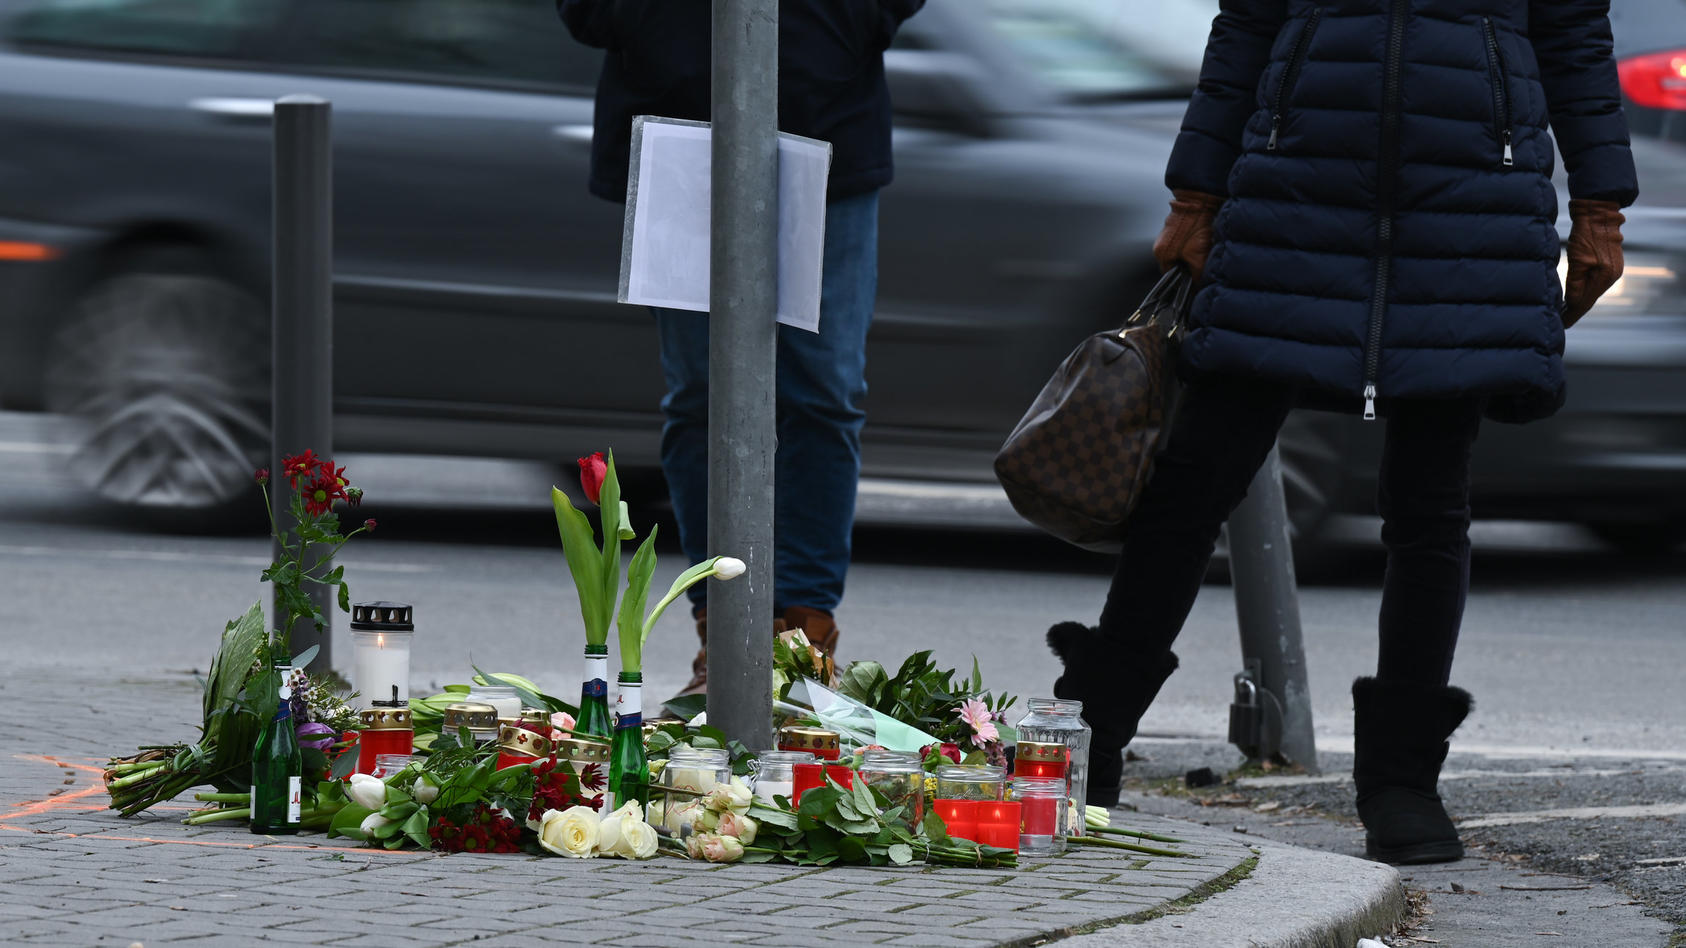 15.02.2021, Hessen, Frankfurt/Main: Menschen trauern an einer Straßenkreuzung im Frankfurter Stadtteil Sachsenhausen, an der Blumen und Kerzen an die Opfer eines tödlichen Verkehrsunfalls vom vergangenen Samstag erinnern. Nach bisherigen Ermittlungen